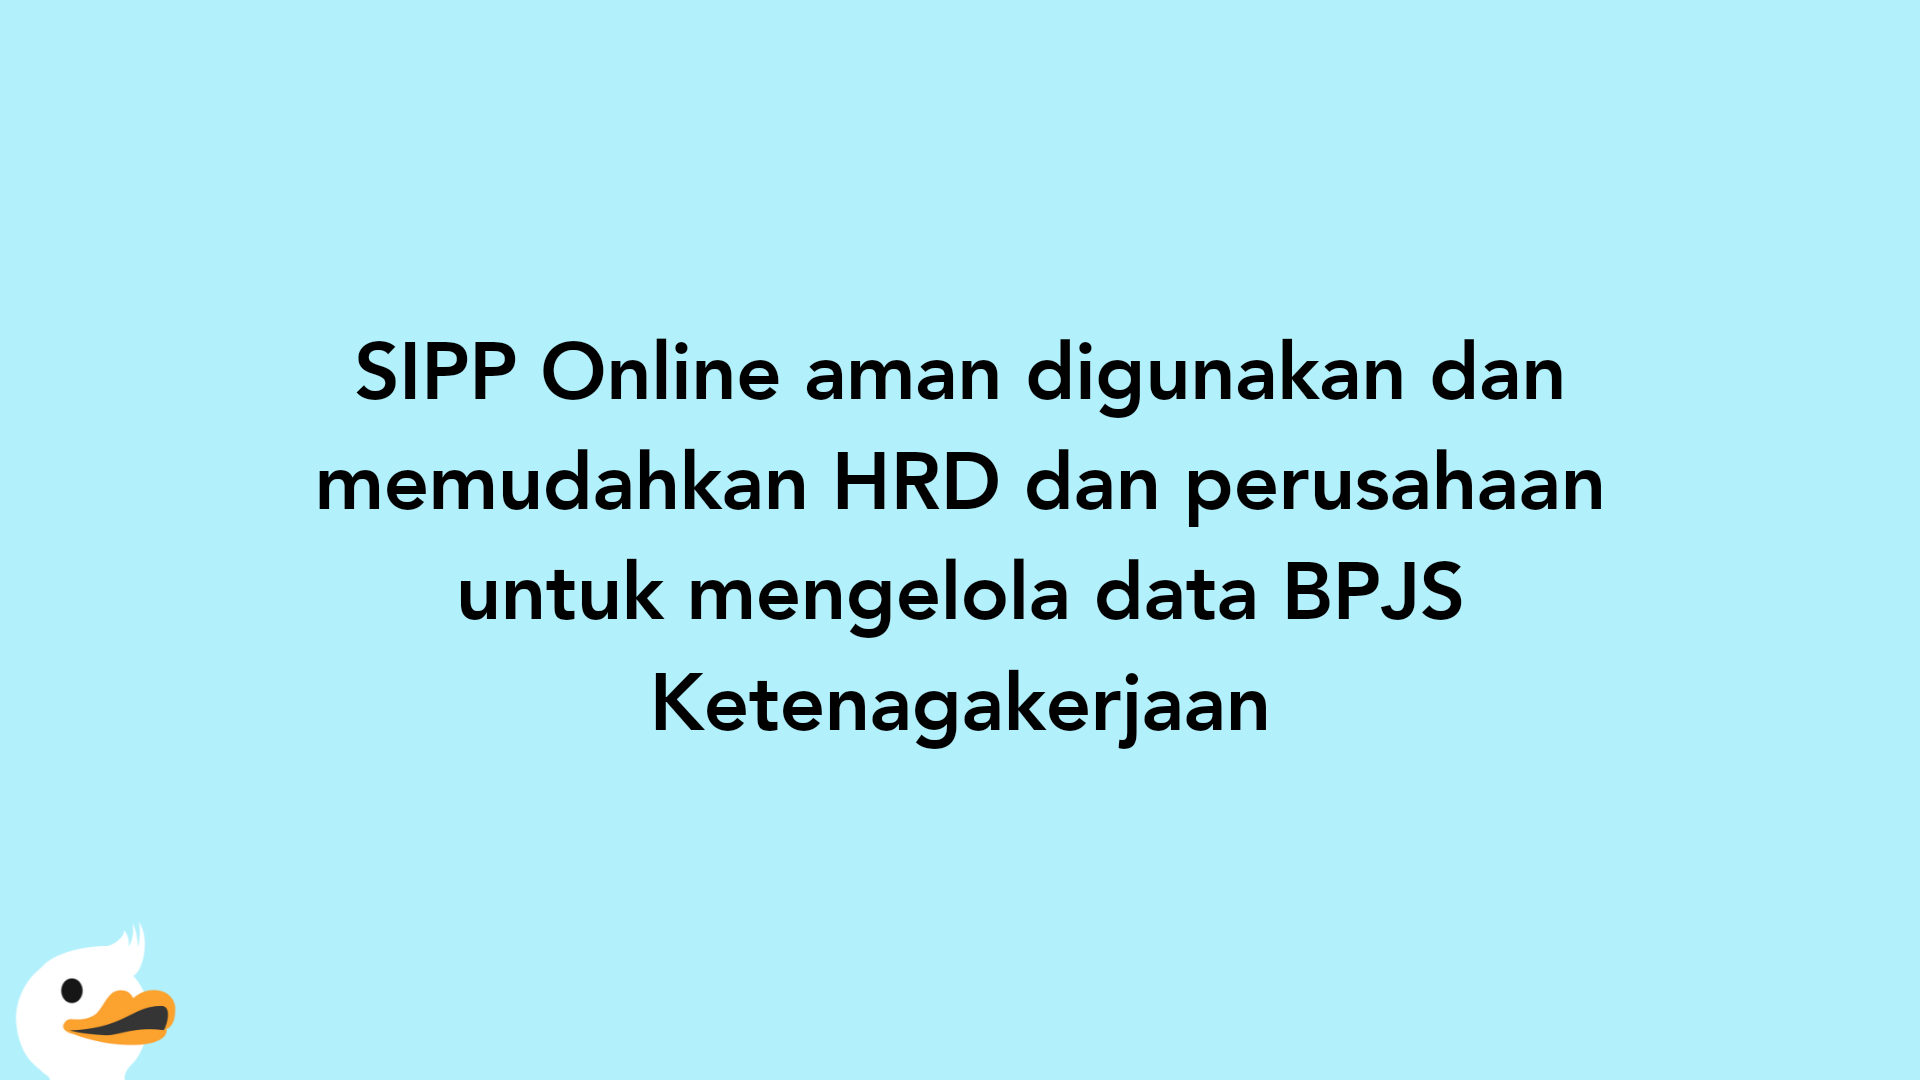 SIPP Online aman digunakan dan memudahkan HRD dan perusahaan untuk mengelola data BPJS Ketenagakerjaan